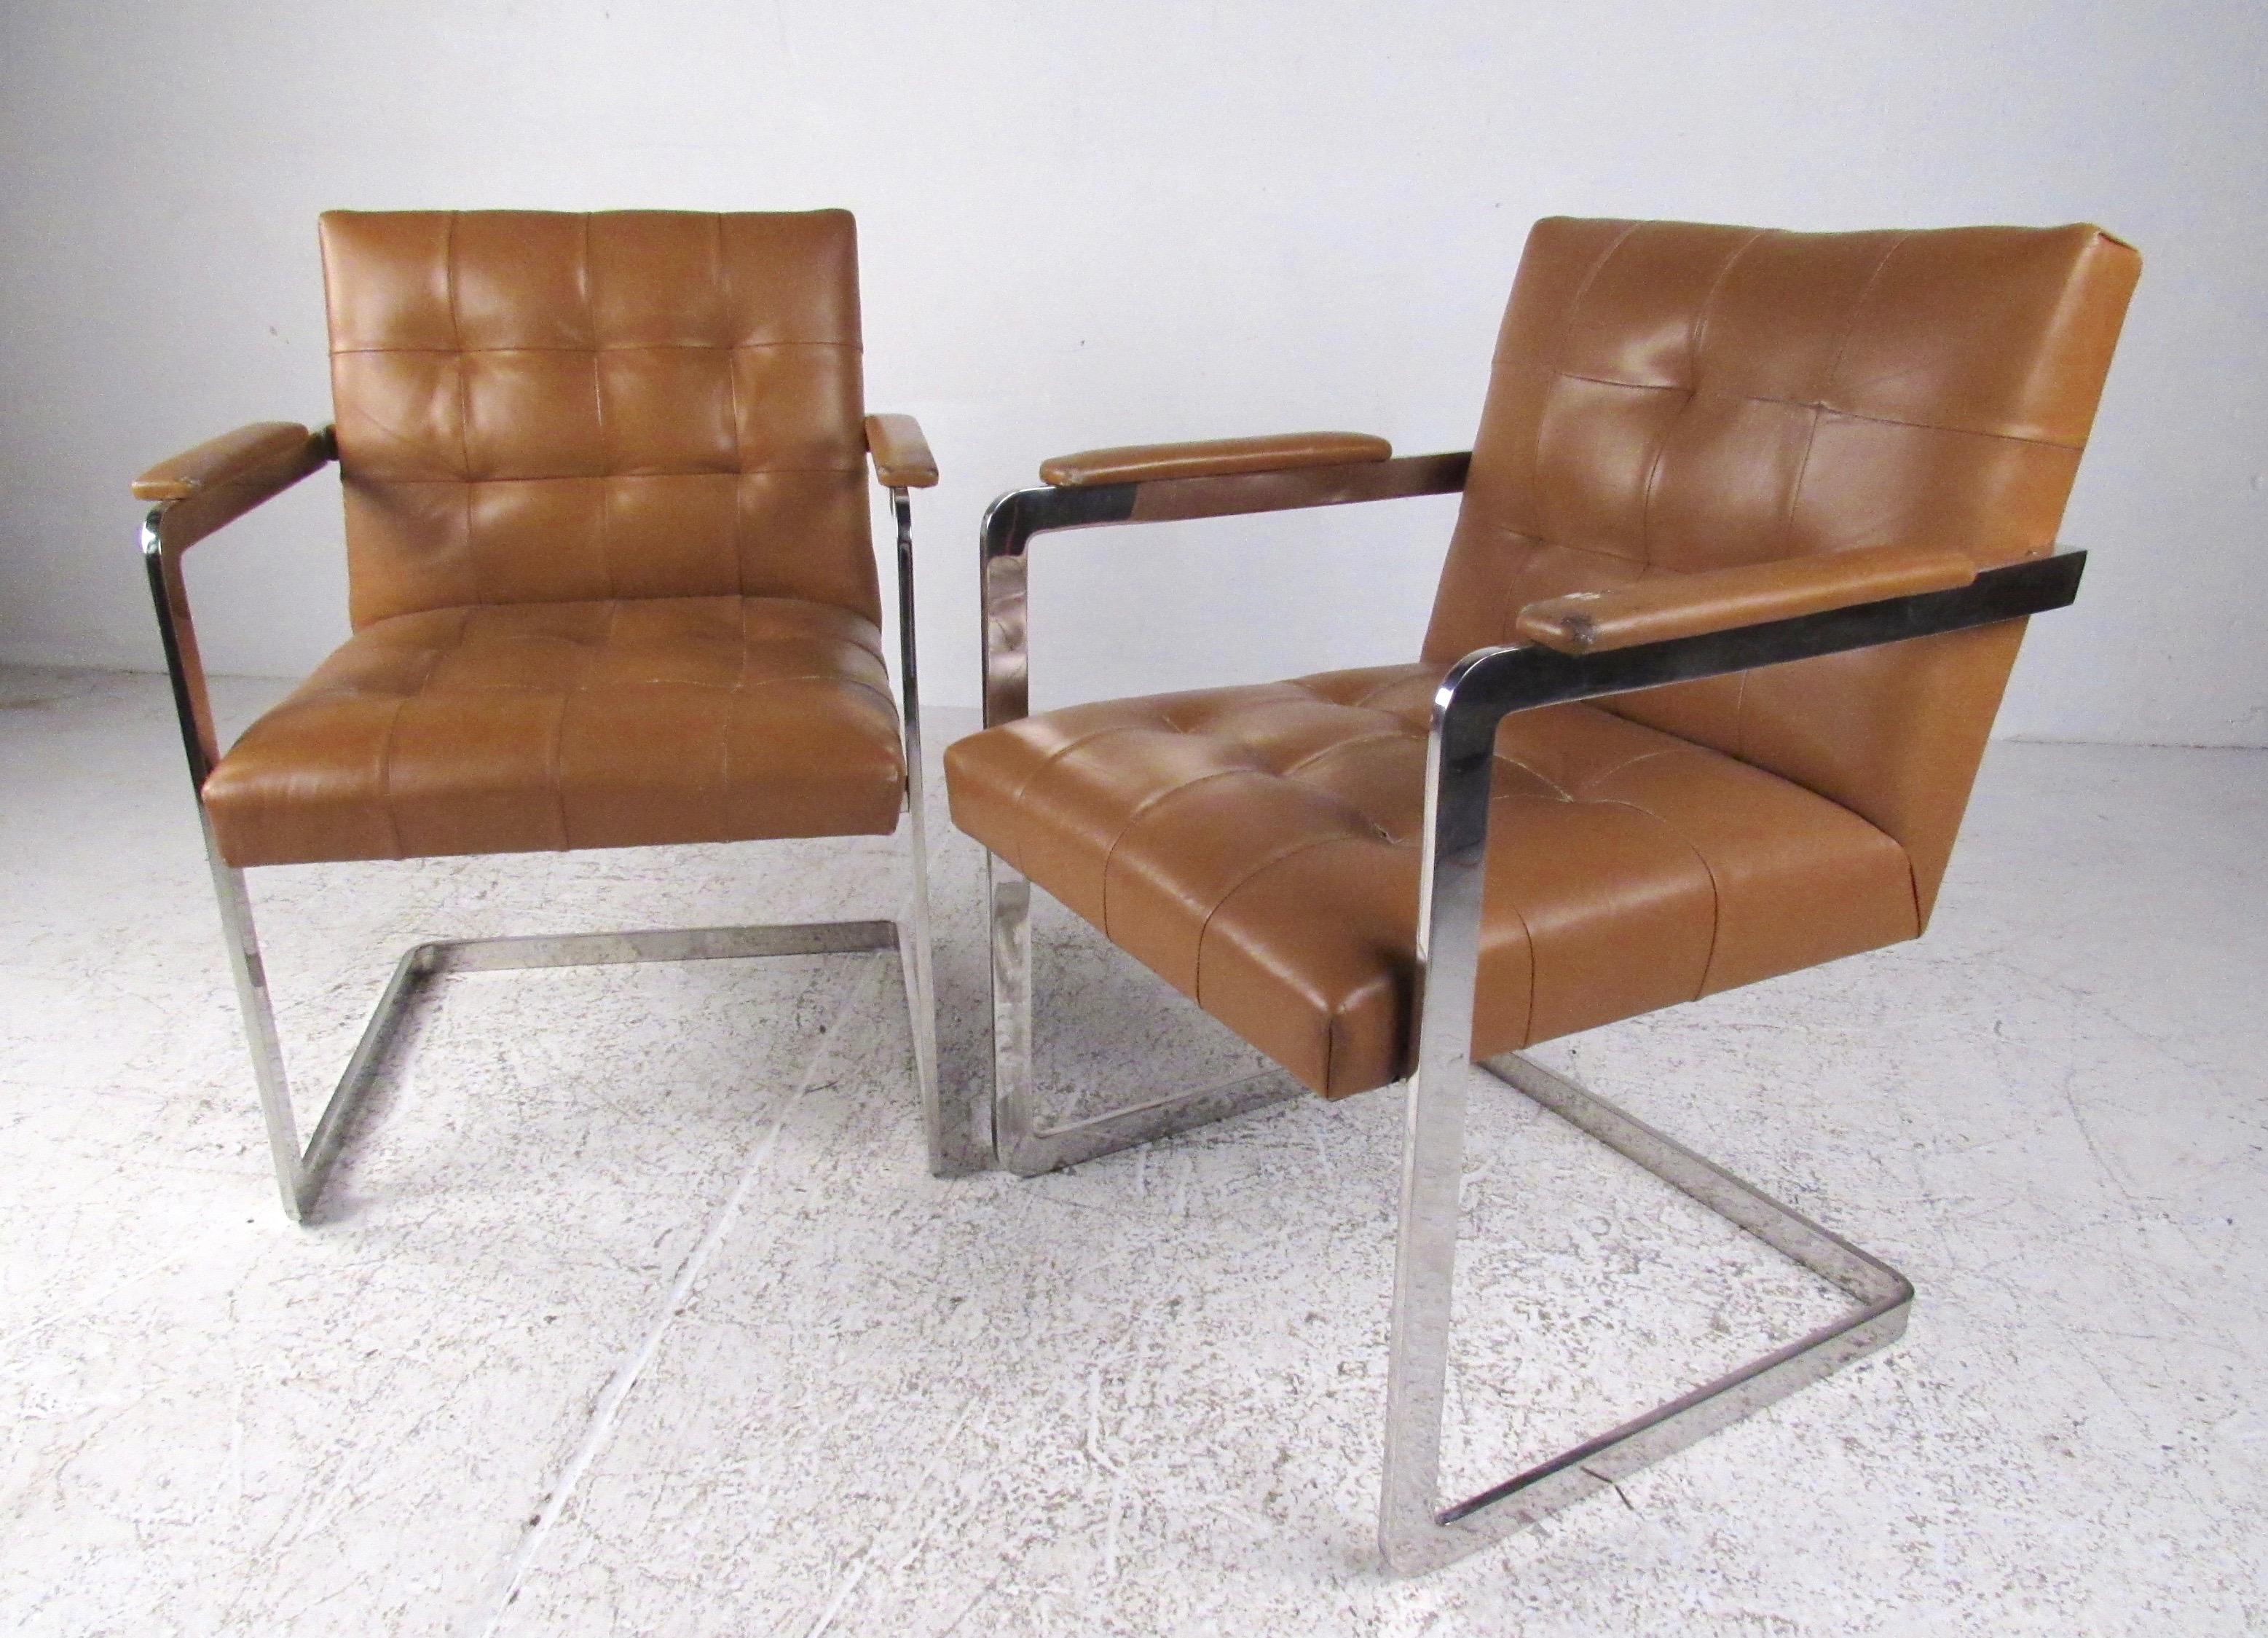 Cette paire élégante de fauteuils modernes vintage présente des sièges en cuir tufté et de lourdes armatures chromées plates. L'attrait du milieu du siècle dans le style de Milo Baughman ajoute une assise frappante aux intérieurs de la maison ou du